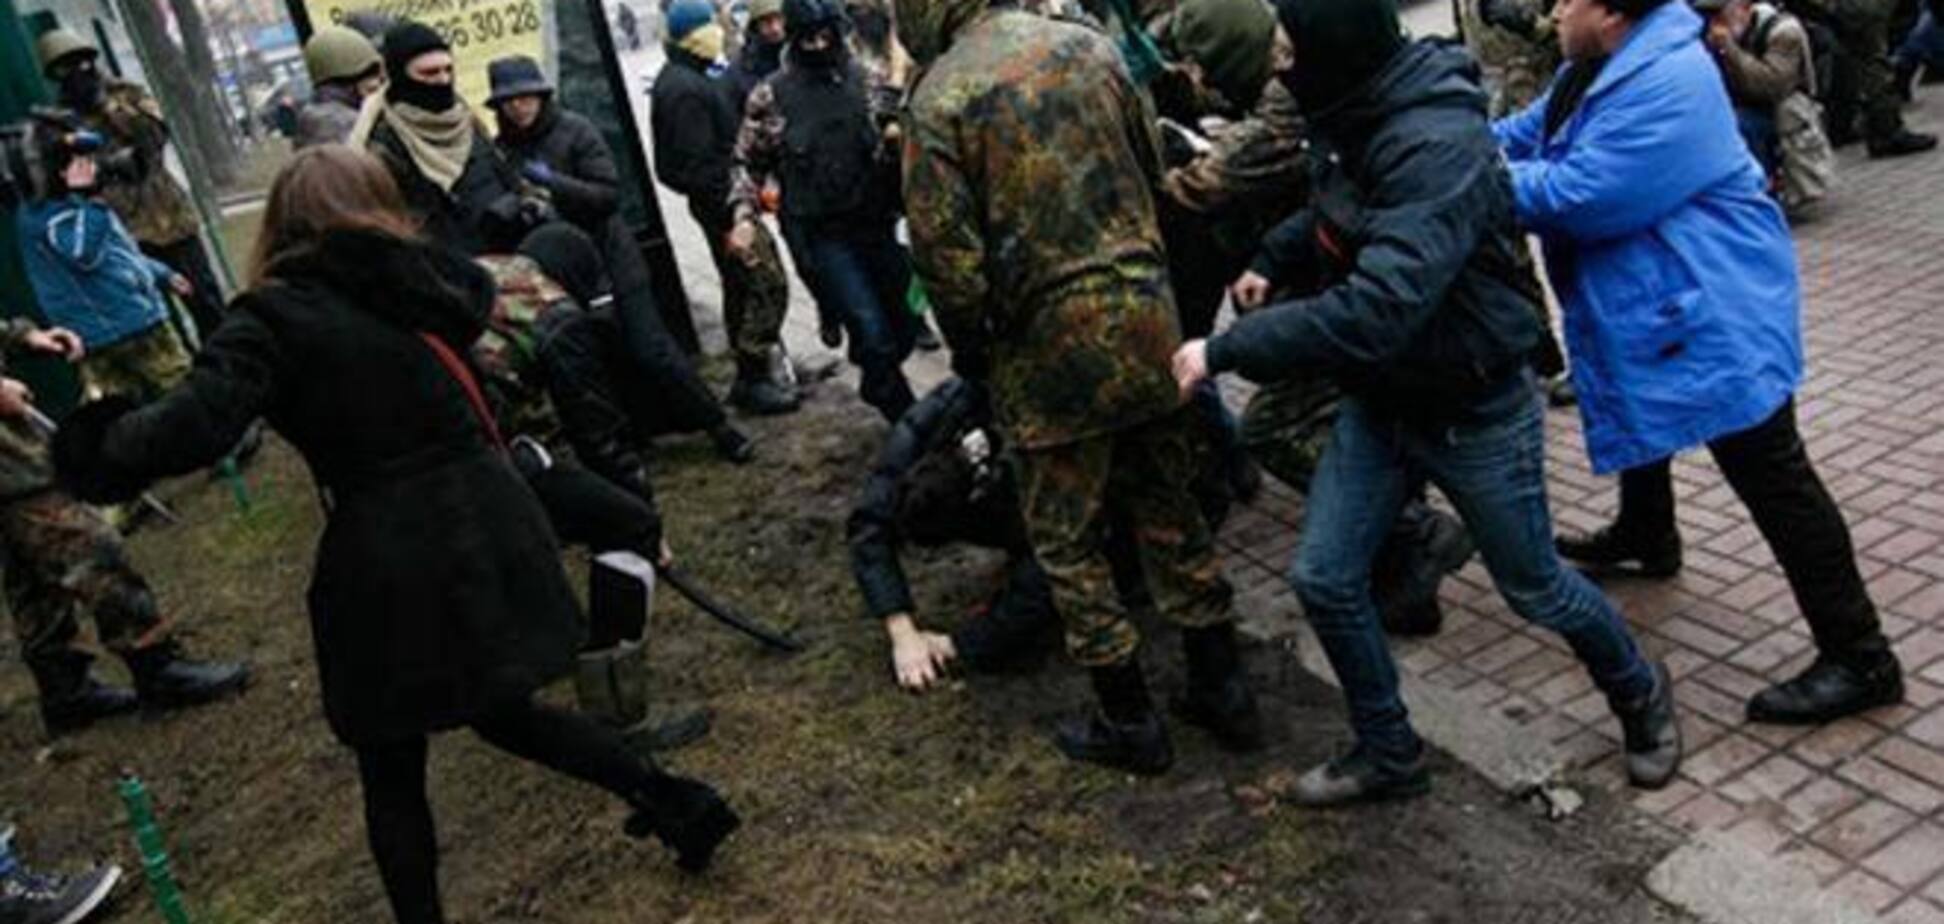 'Титушки' получили отпор и поняли, что им на Майдане не место - свободовец